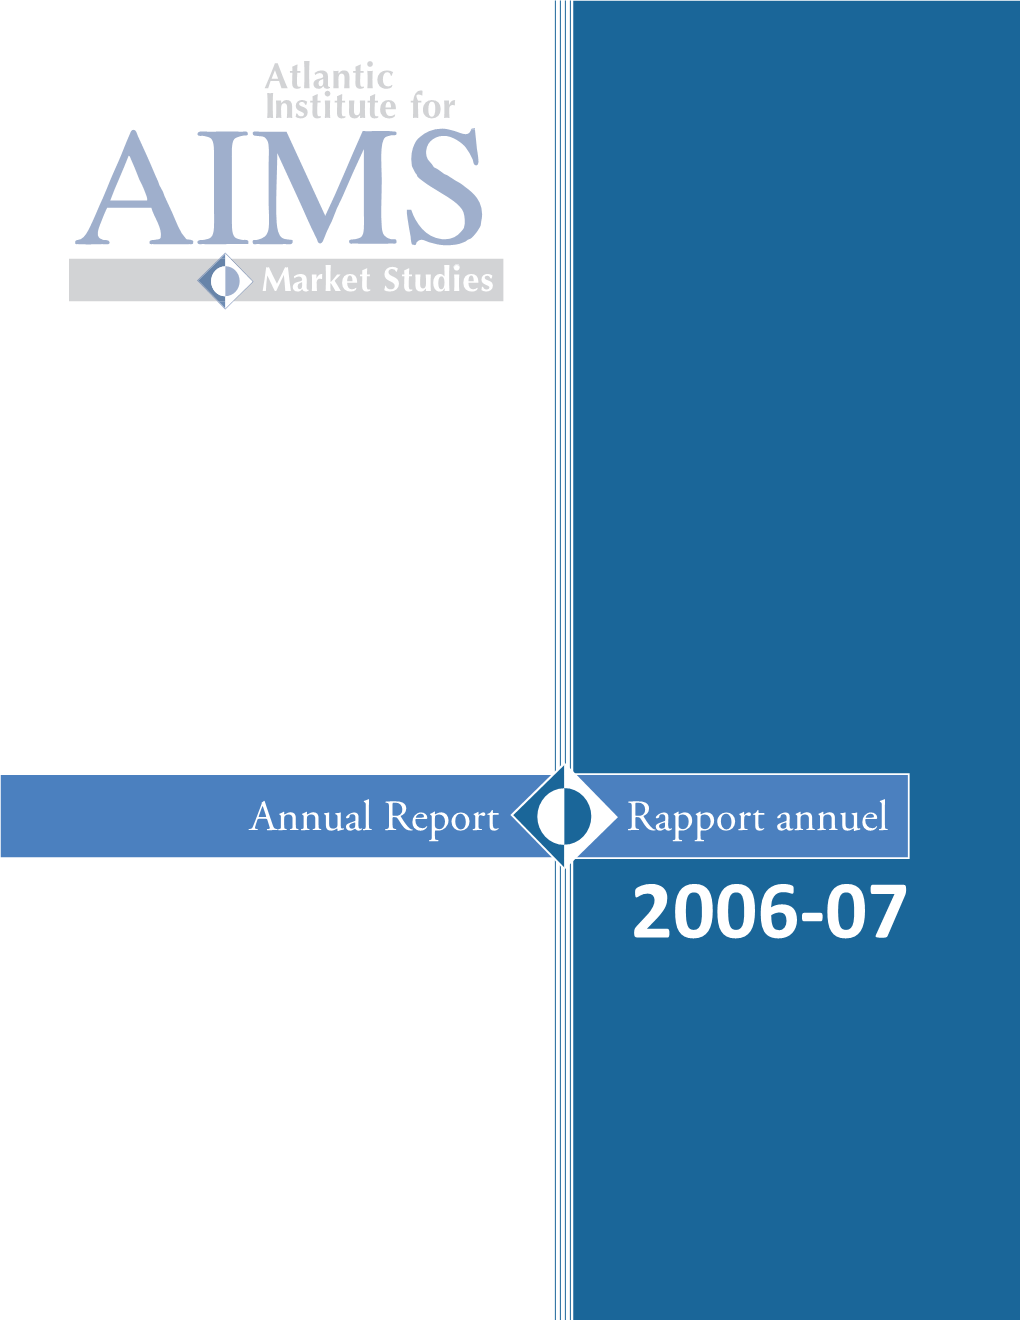 2006-2007 Annual Report/Rapport Annuel